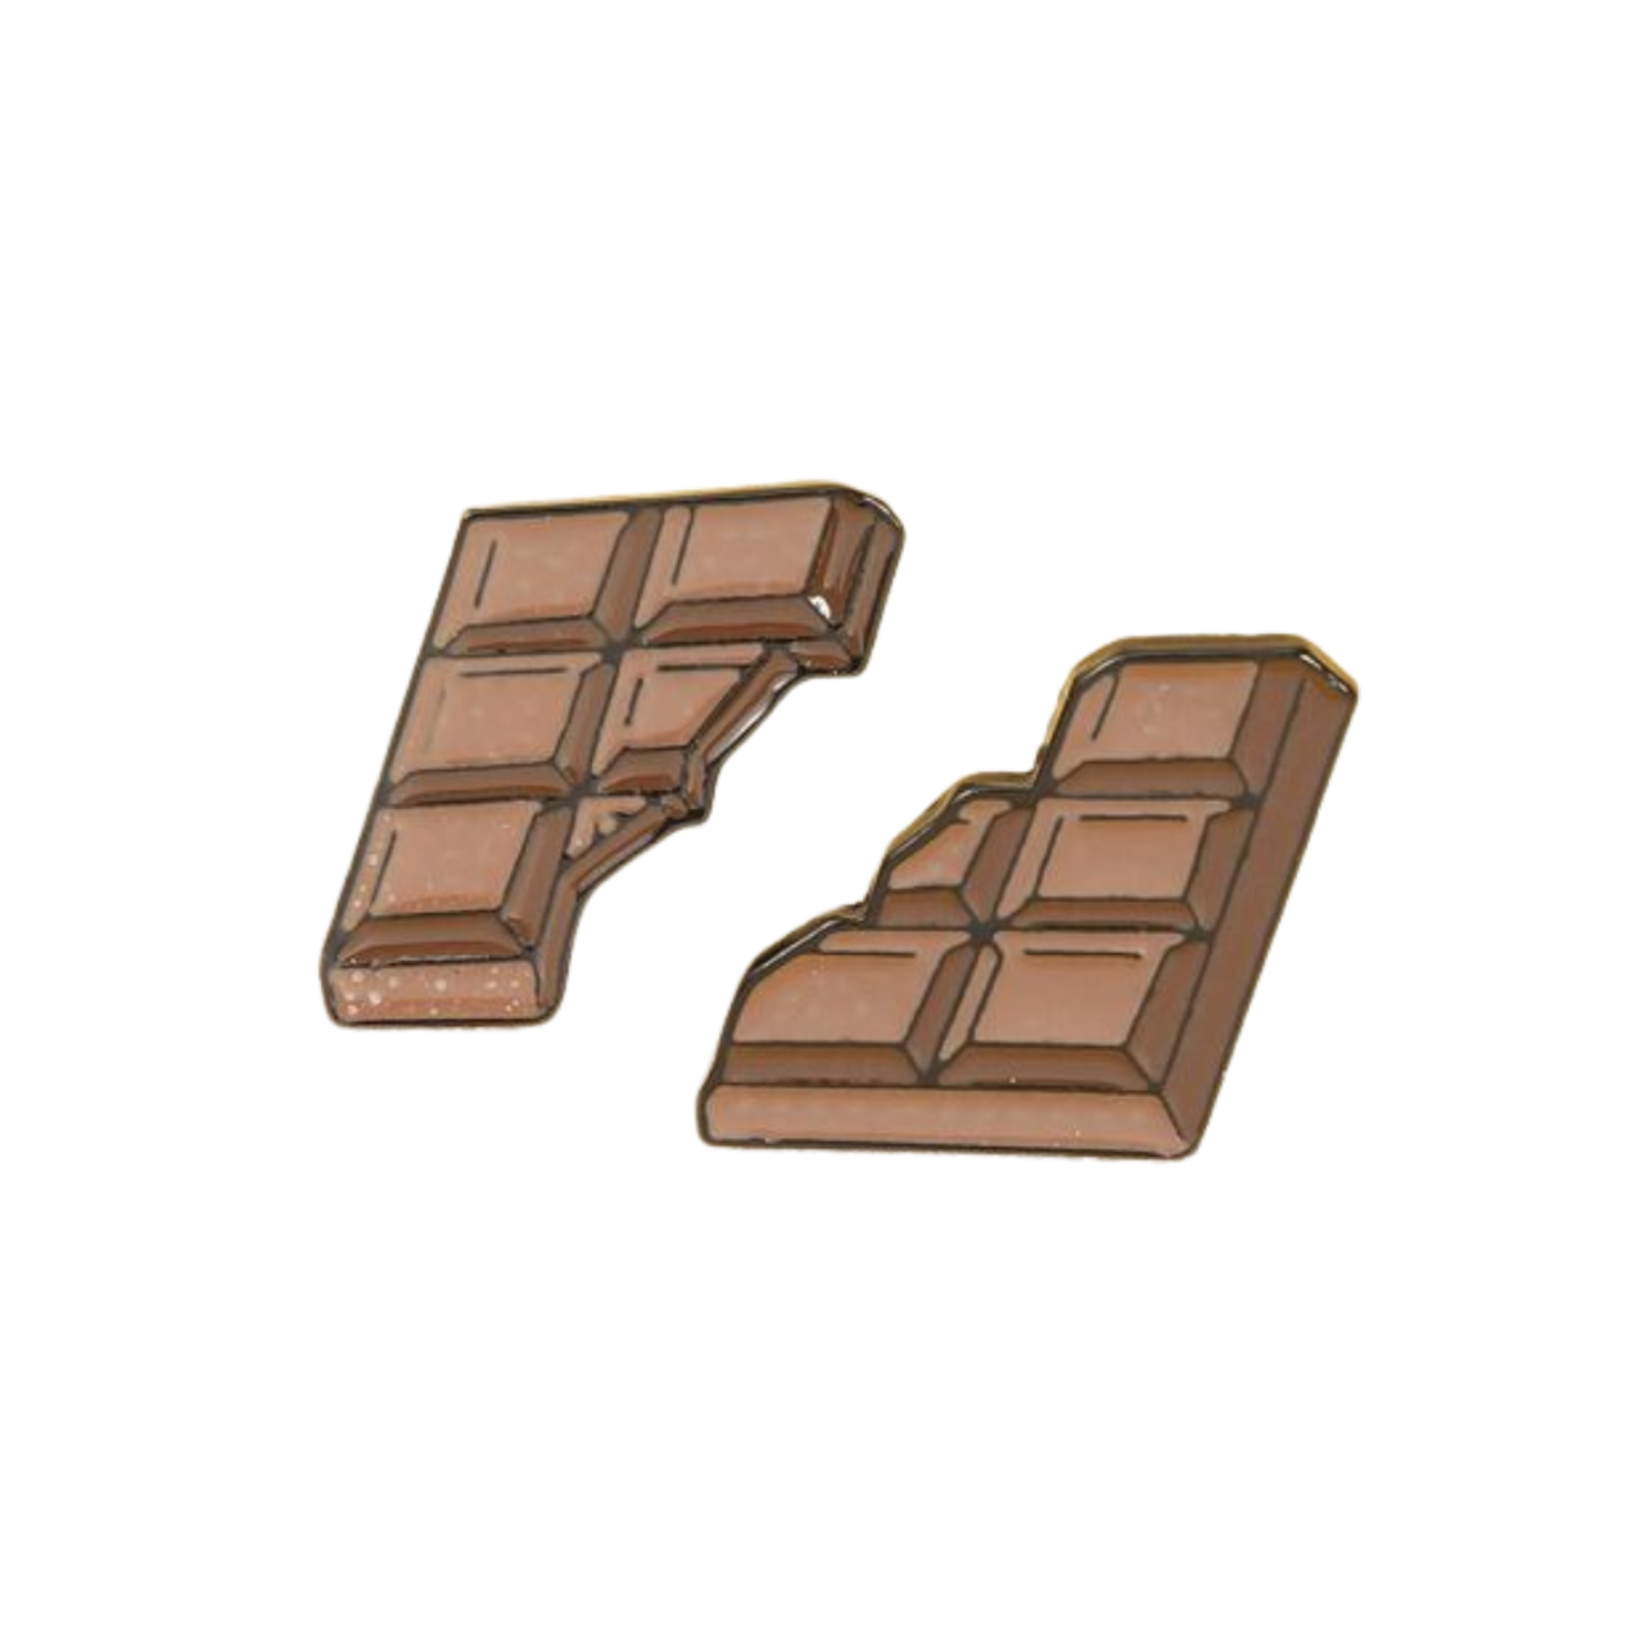 Pin - Chocolate Bar (2 Pieces)